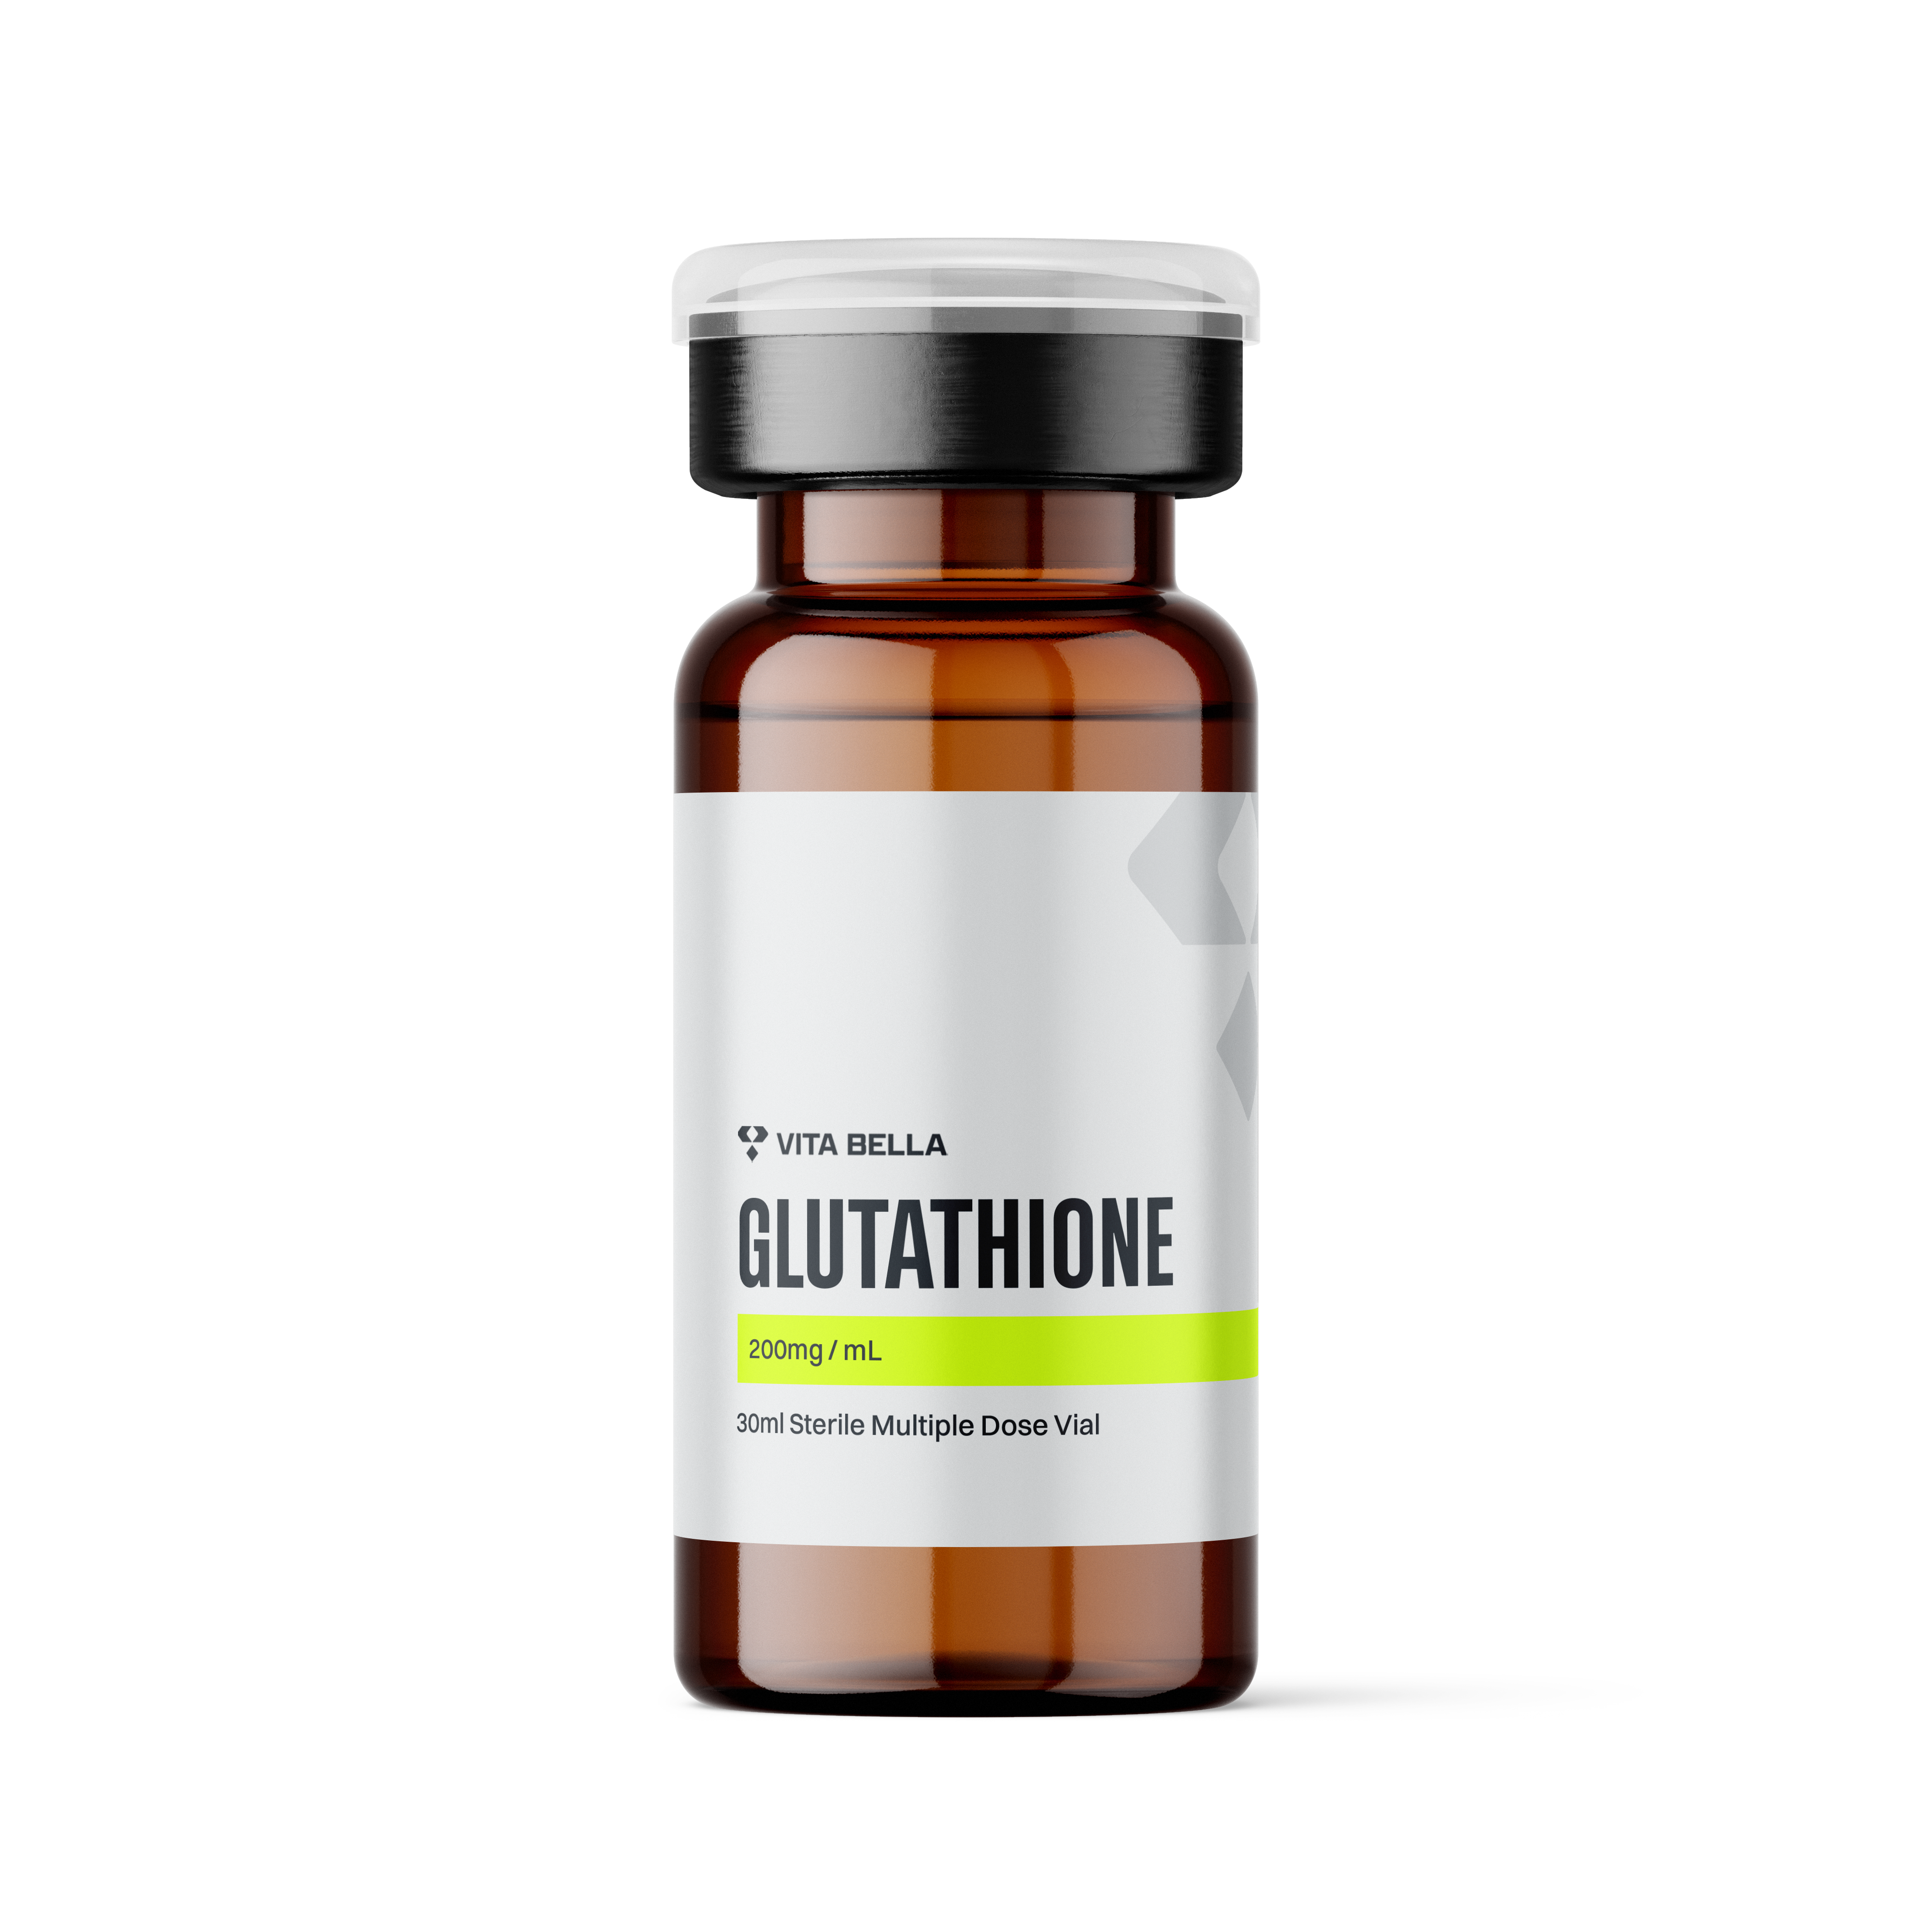 Glutathione vial